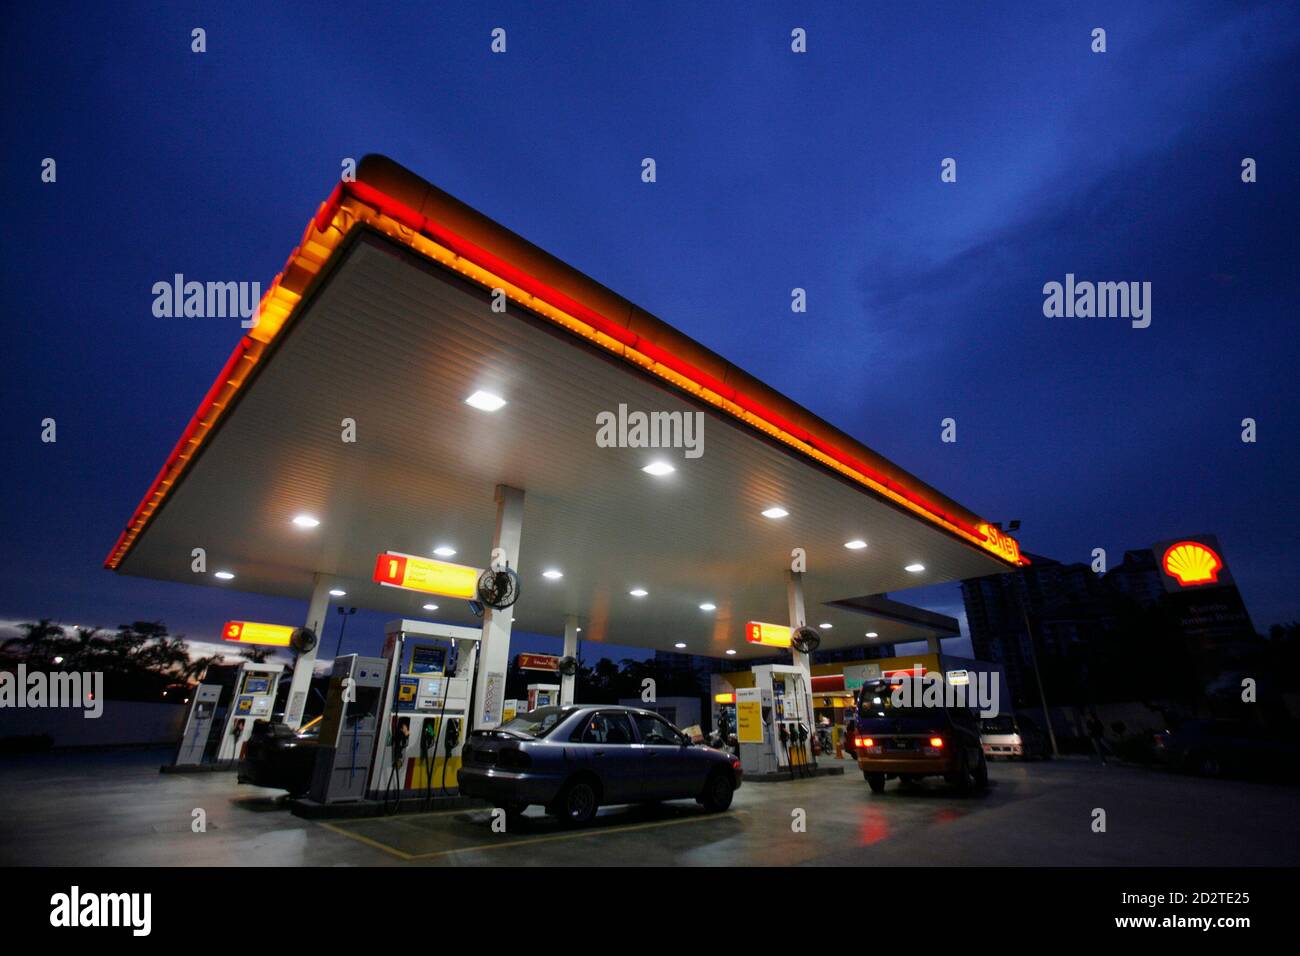 Price malaysia petrol in Malaysia Fuel